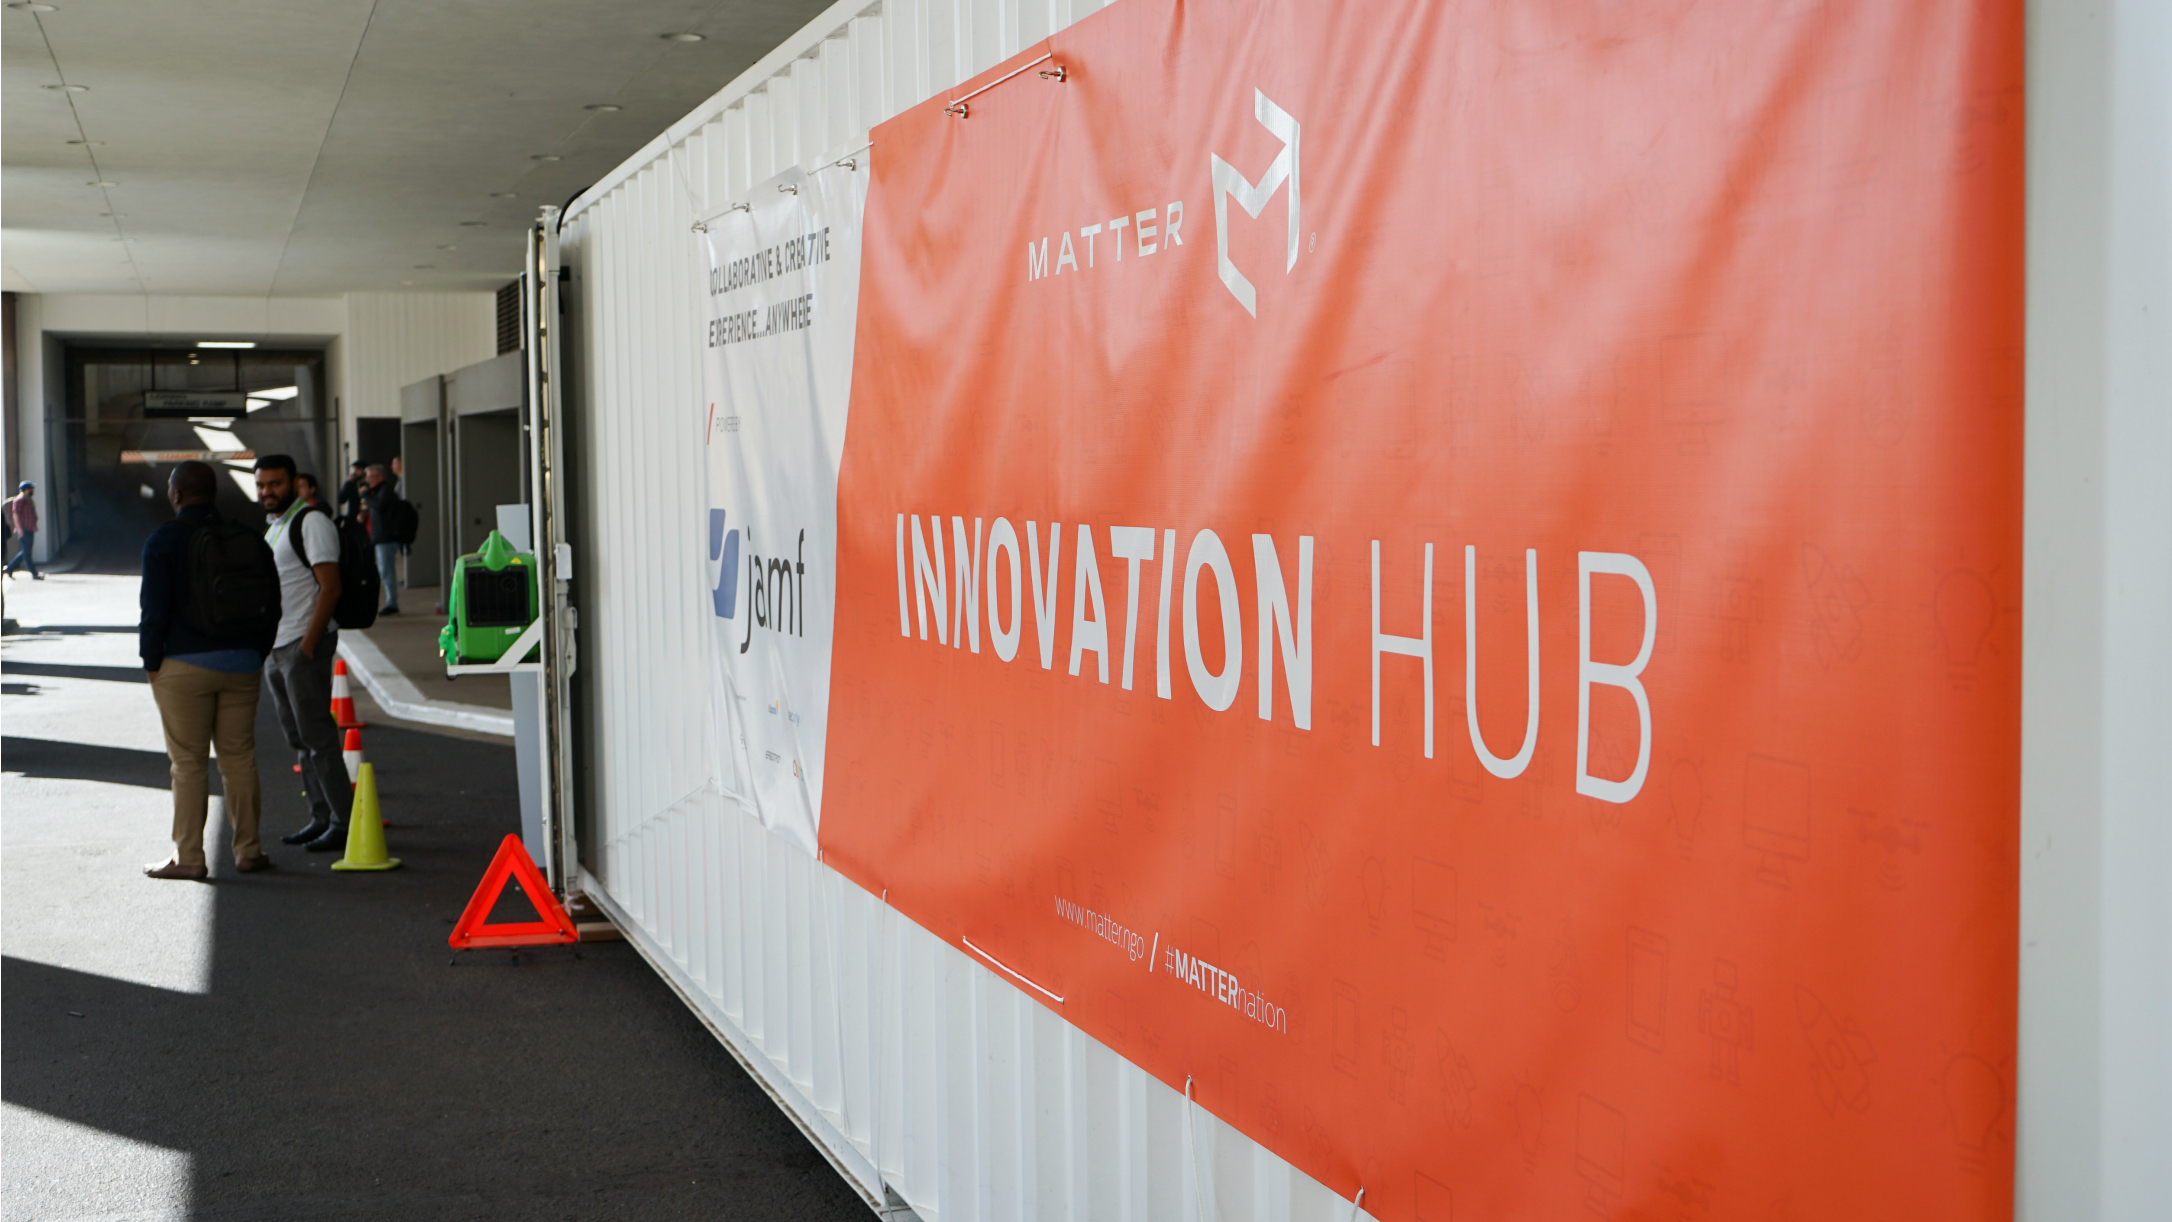 MATTER Innovation Hub at JNUC